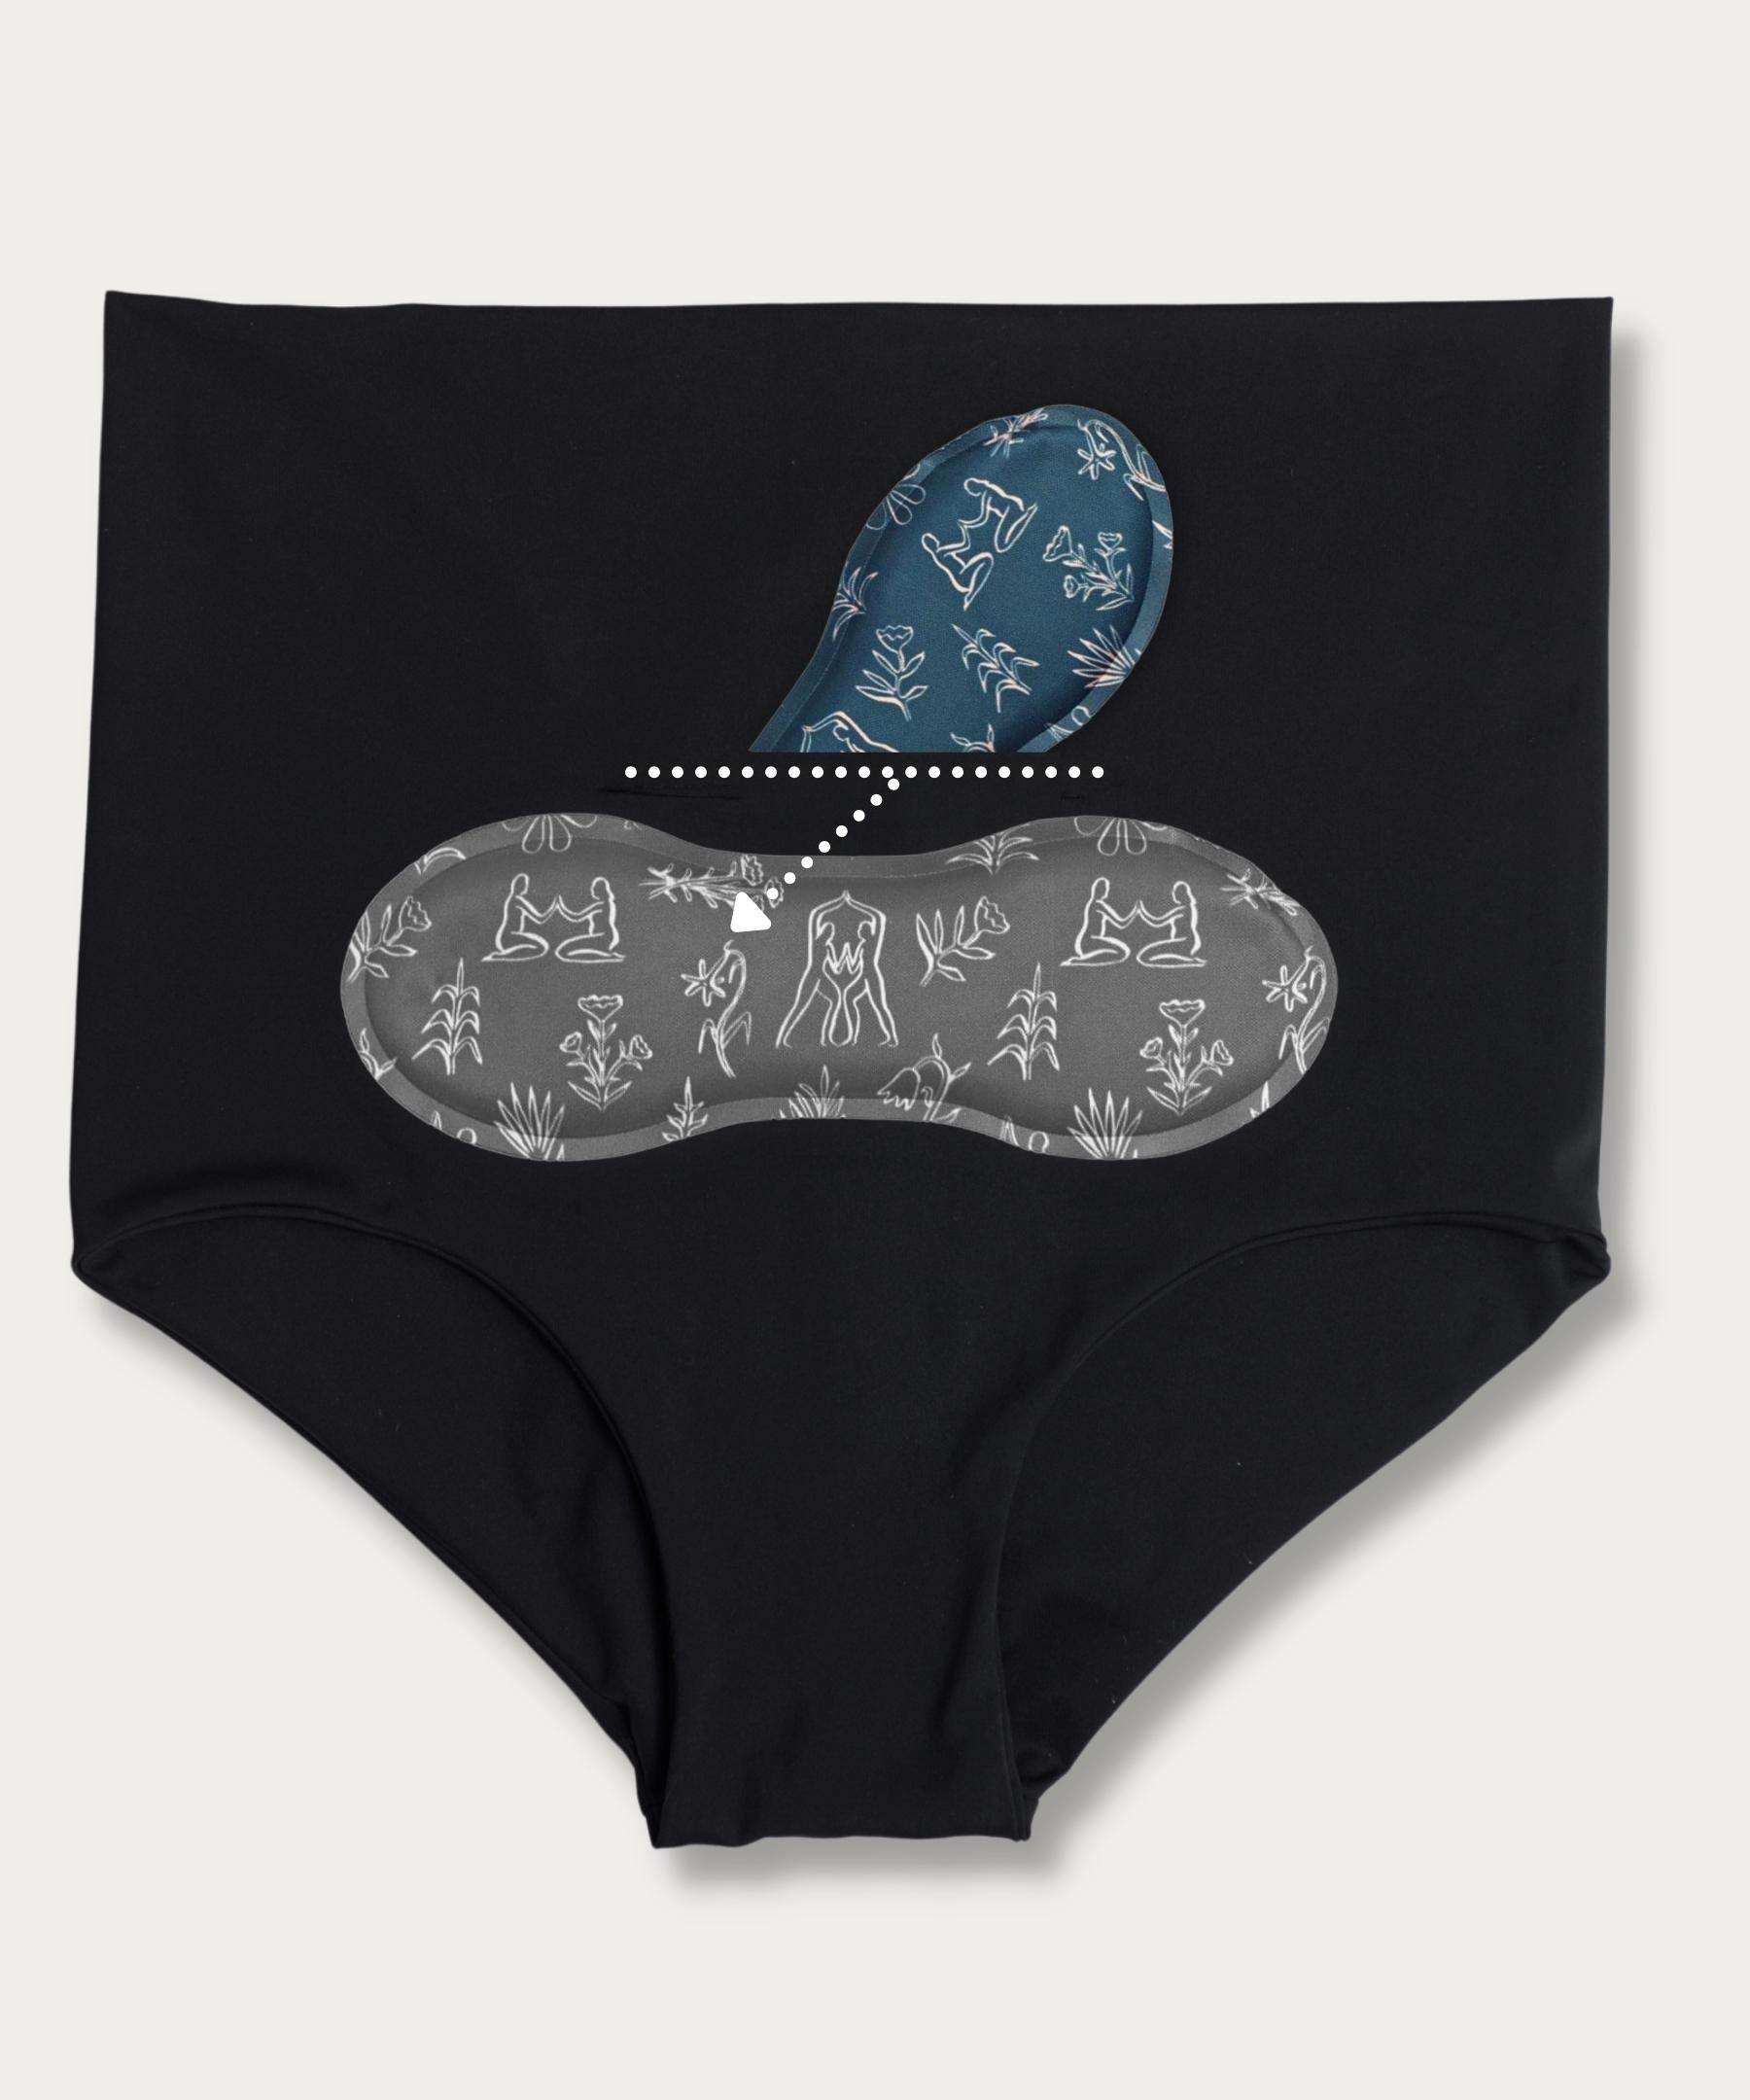 Nuk Disposable Women's Underwear Size M 4 pack l Sanareva